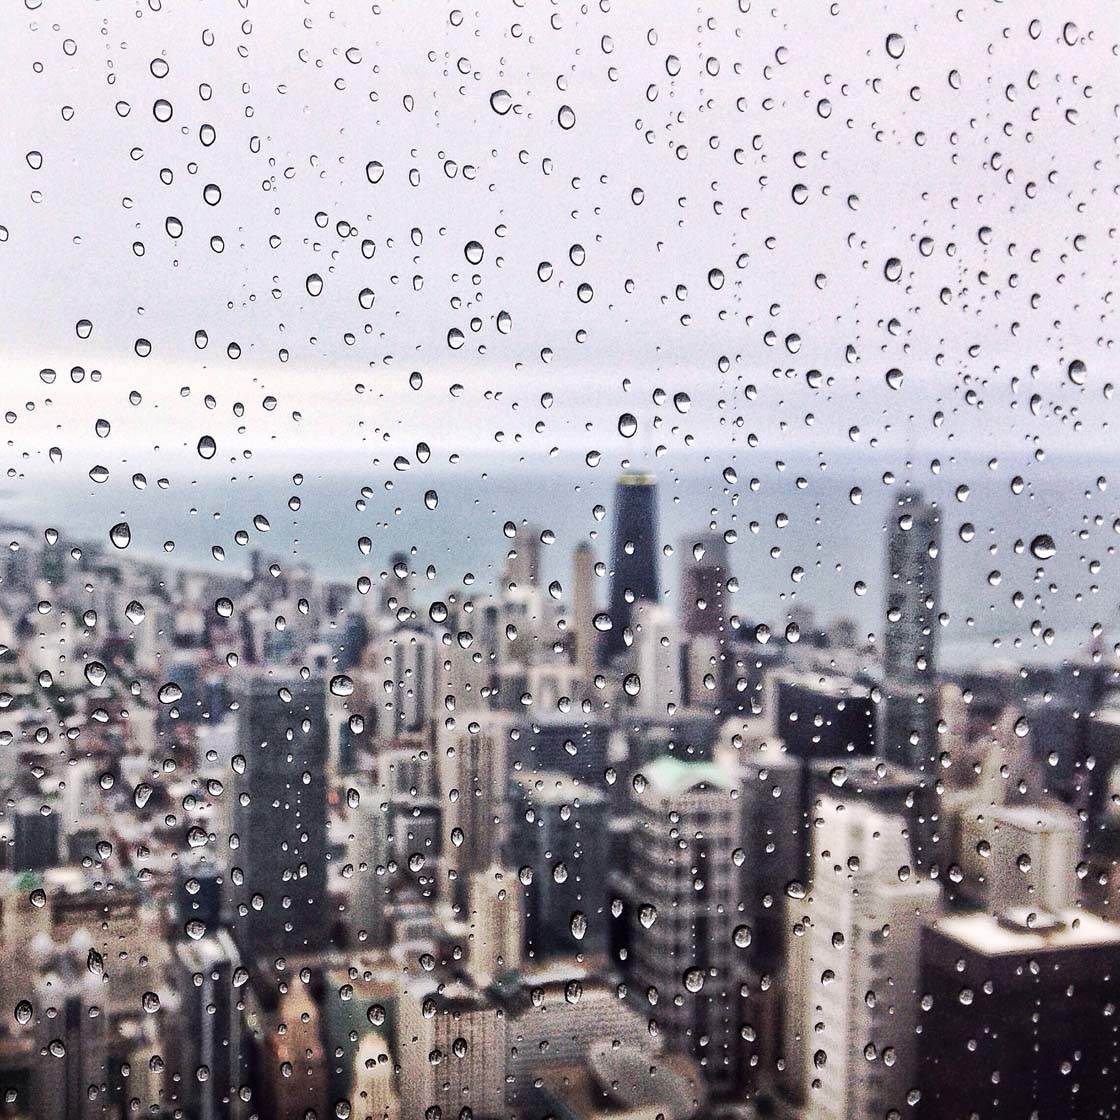 Fun Ways To Take Amazing iPhone Photo In The Rain